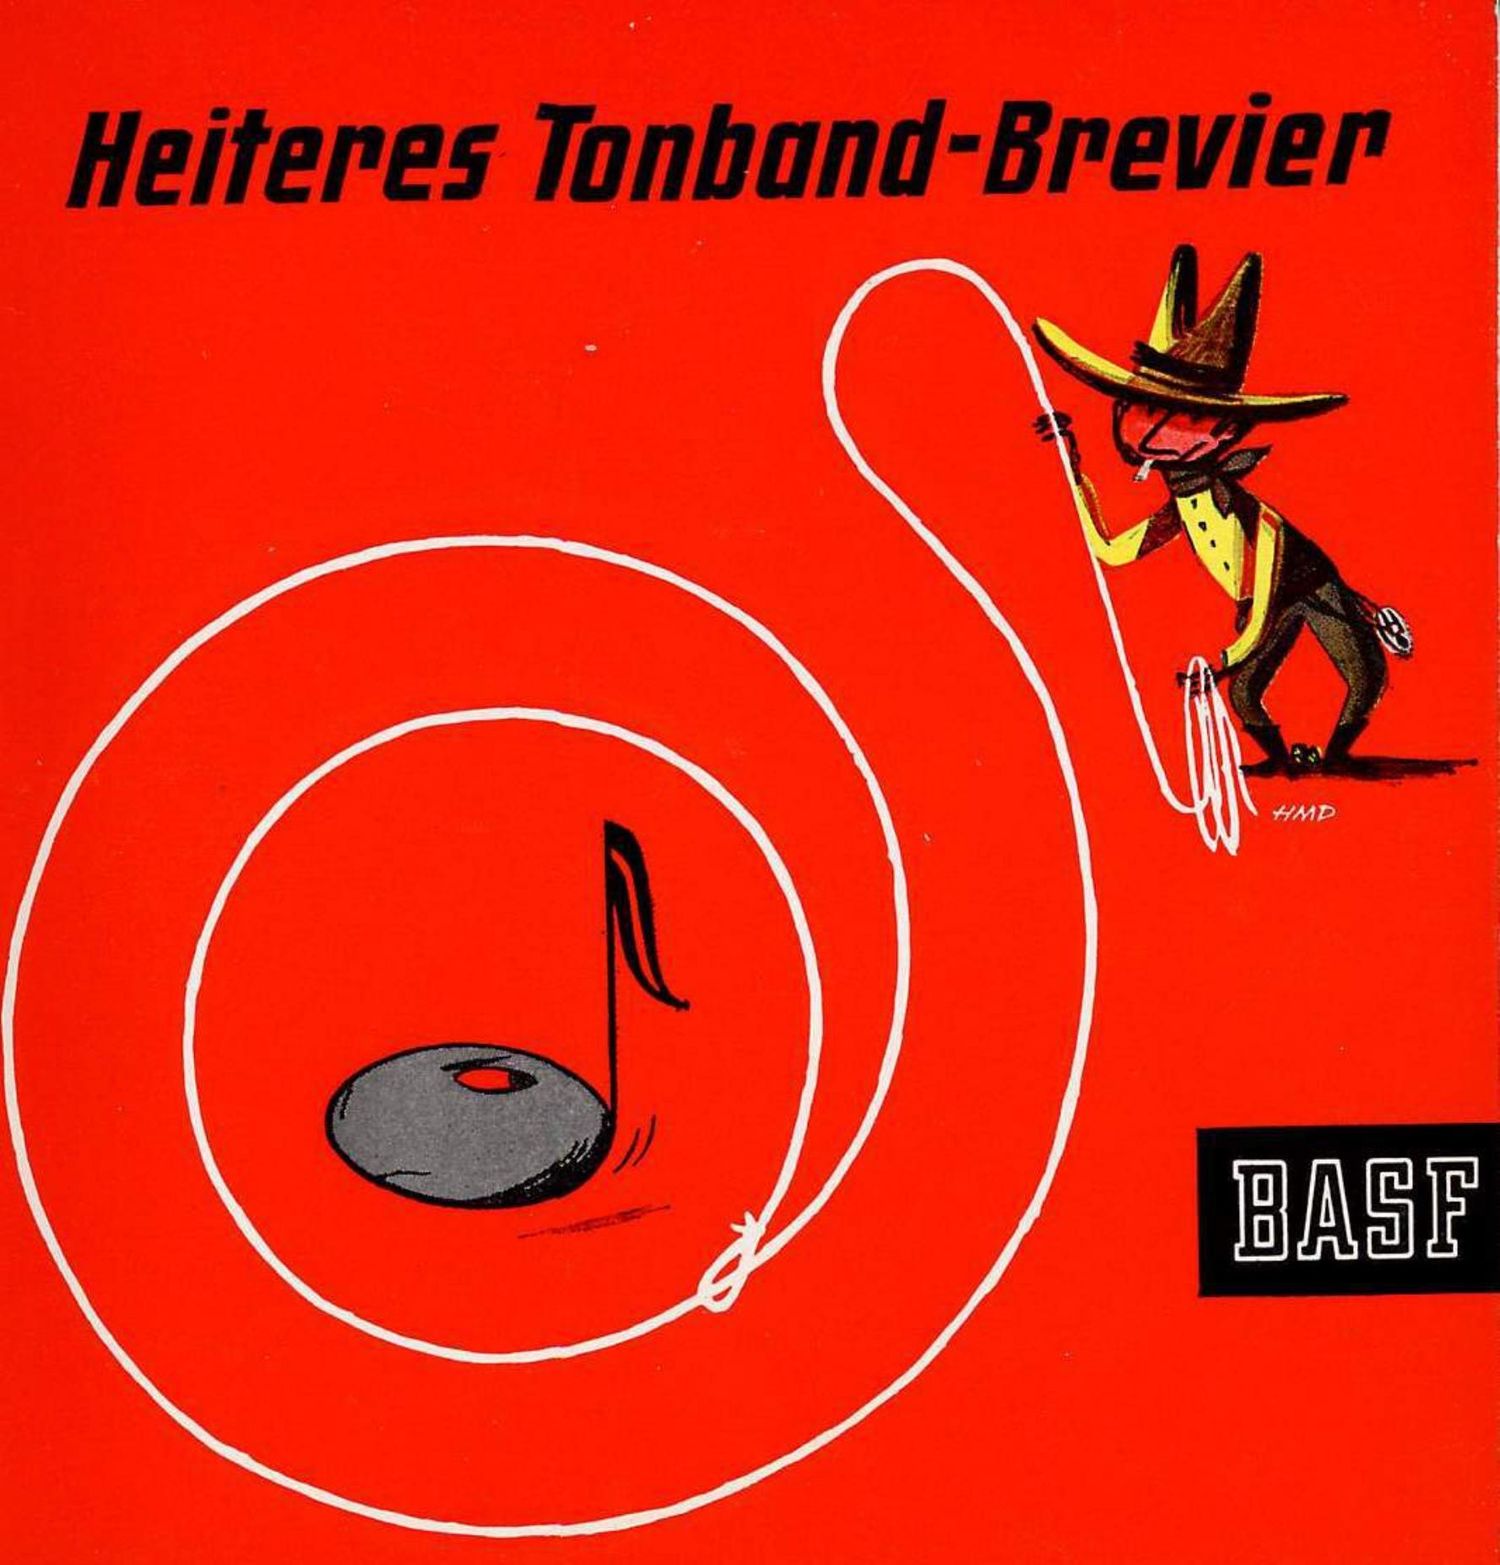 BASF Tonband Brevier